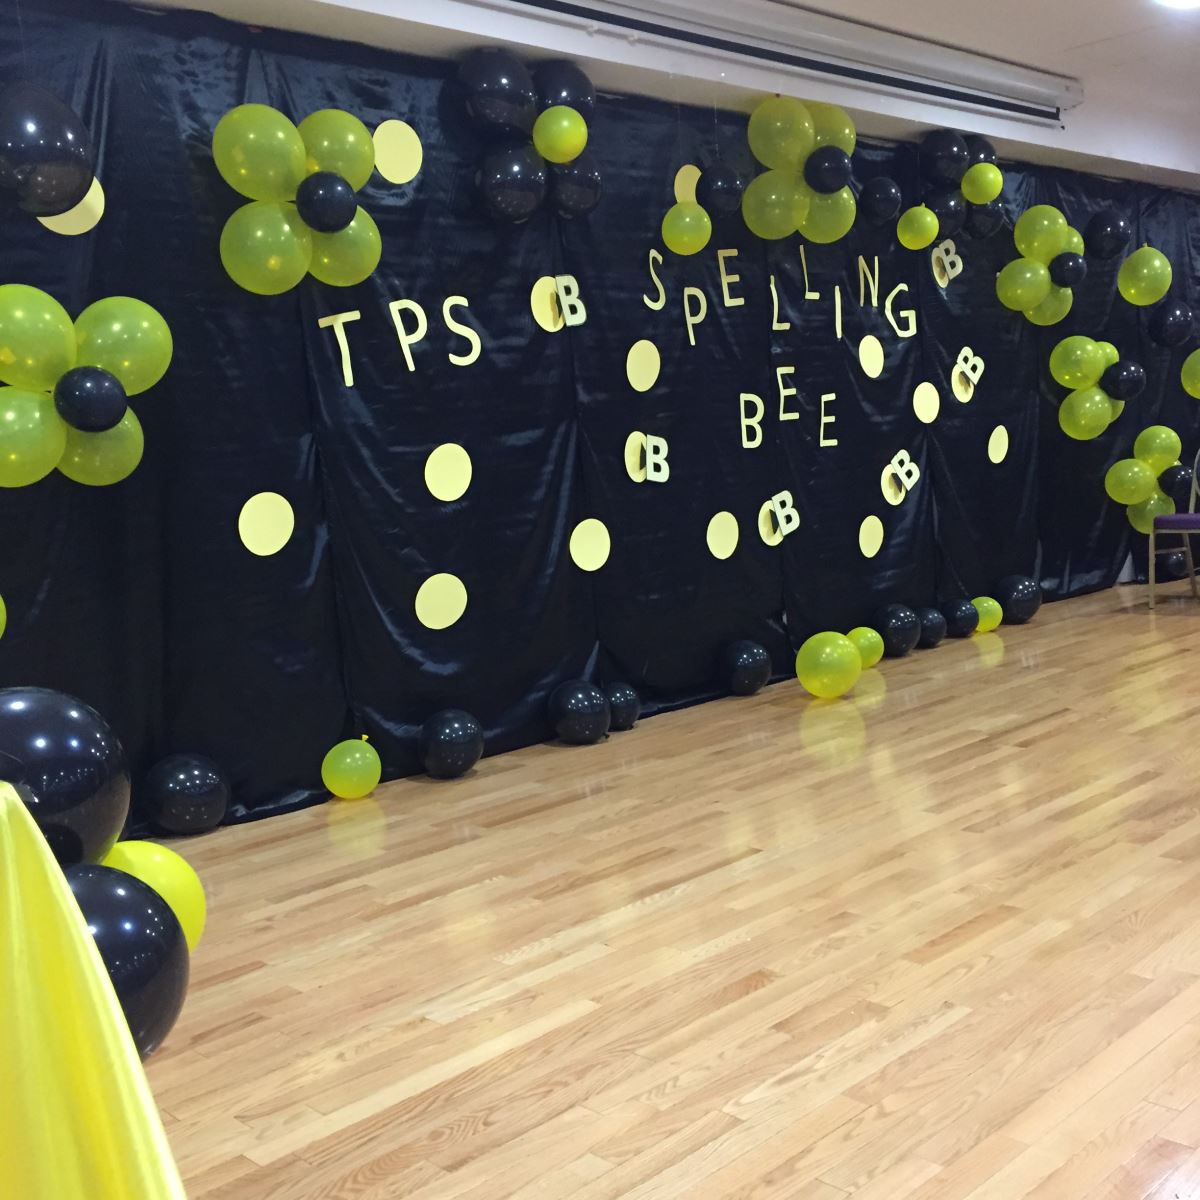 برنامج "Spelling Bee Competition" في القسم الابتدائي